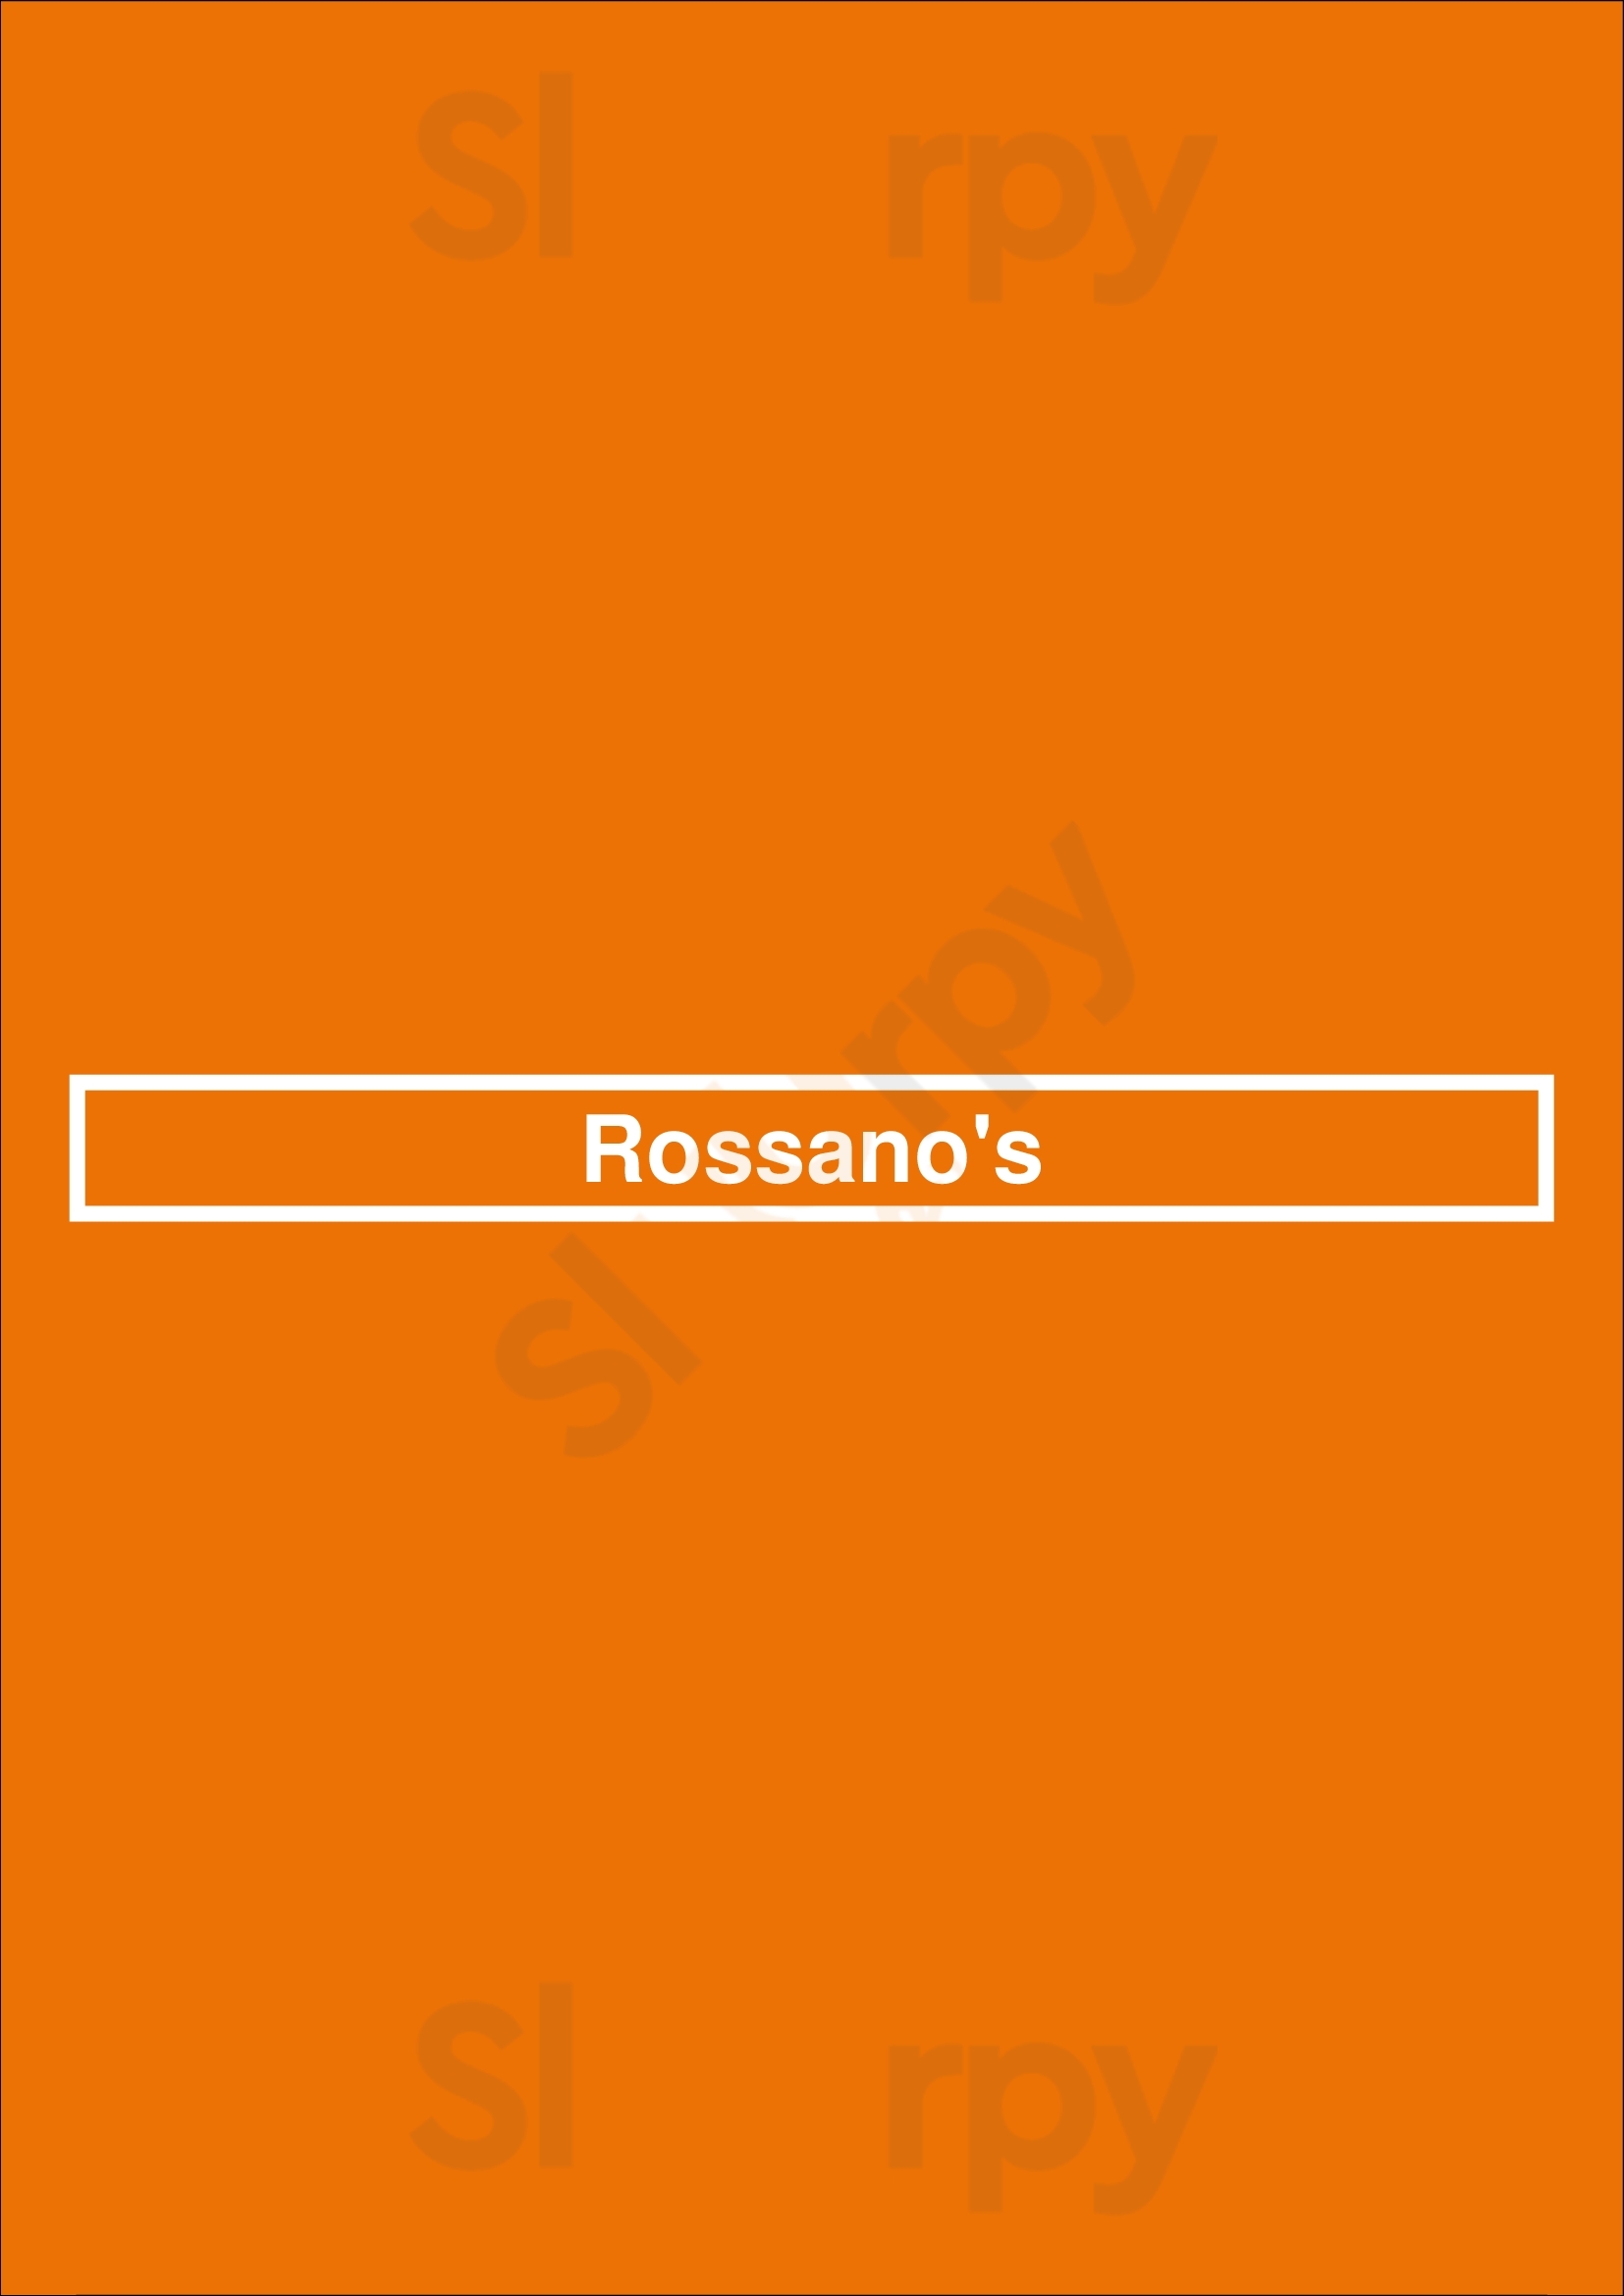 Rossano's Moncton Menu - 1